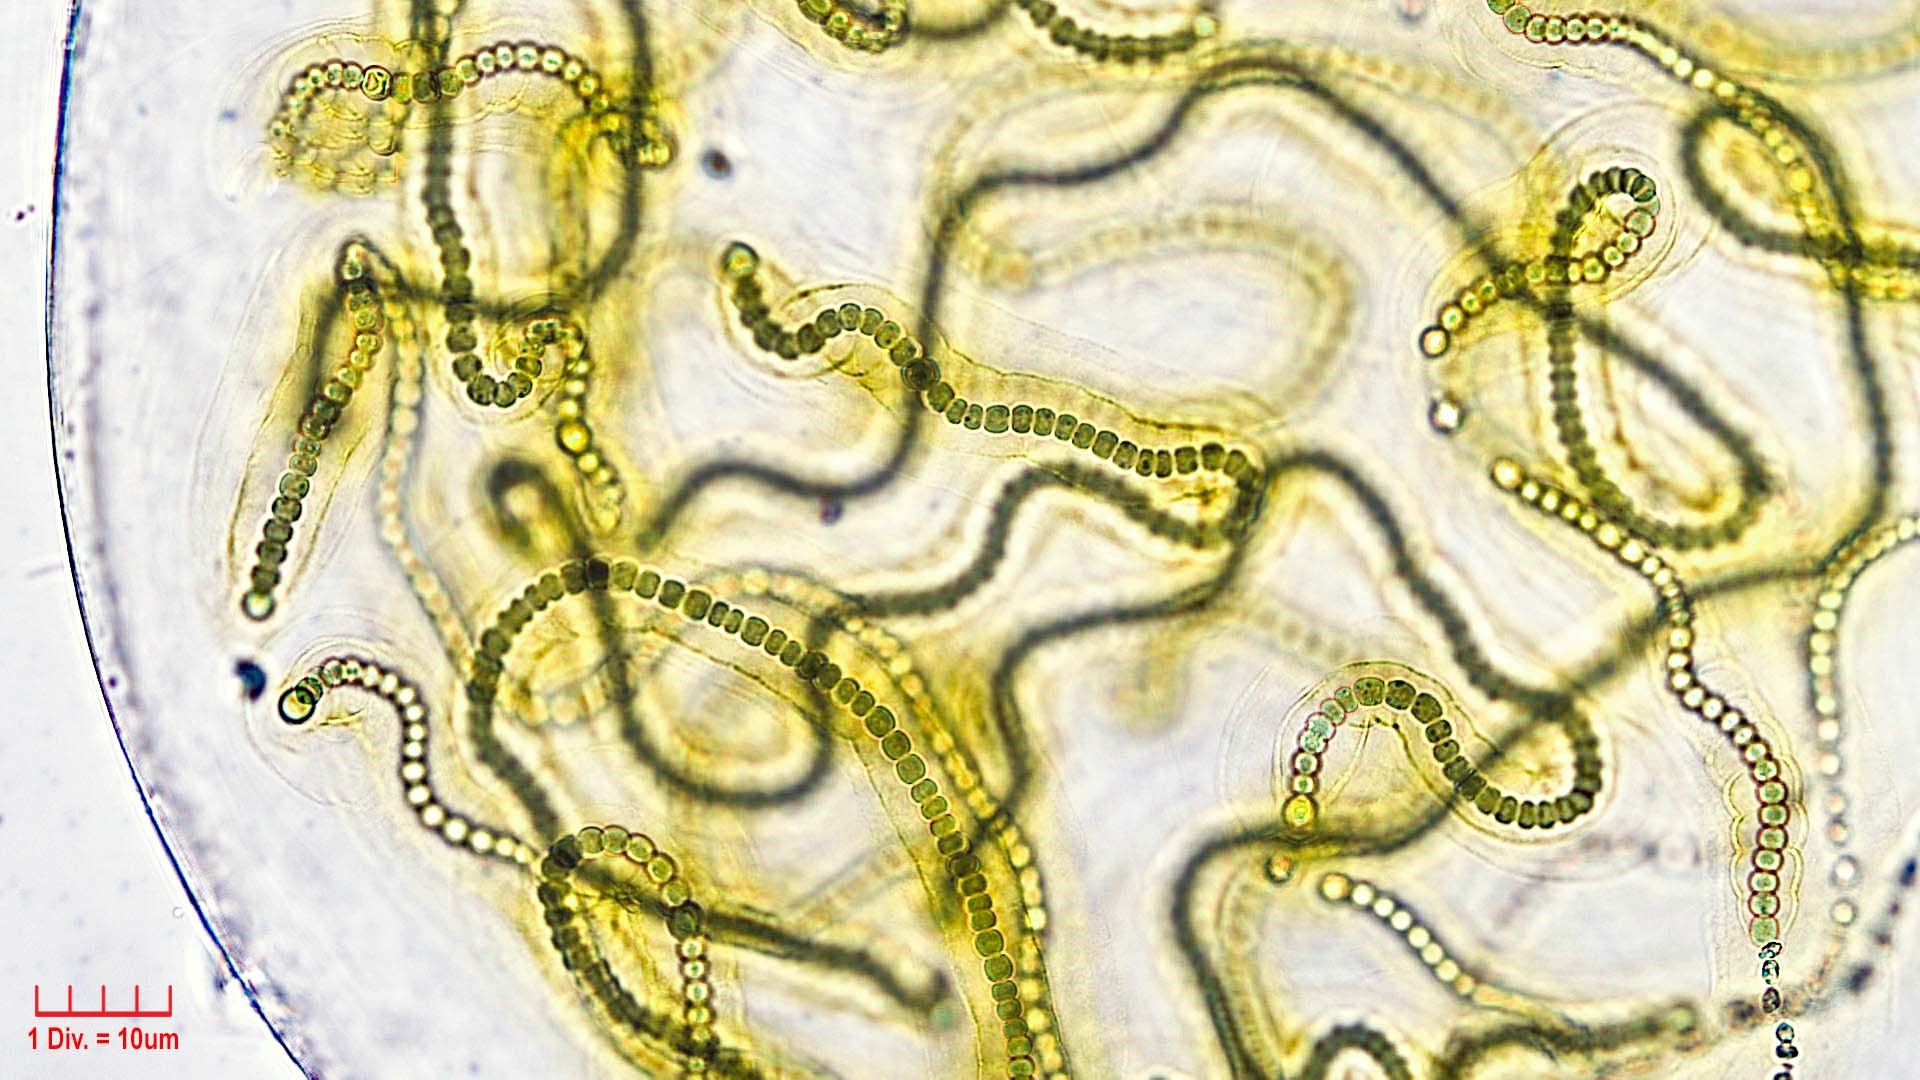 ././Cyanobacteria/Nostocales/Nostocaceae/Nostoc/microscopicum/nostoc-microscopicum-603.jpg